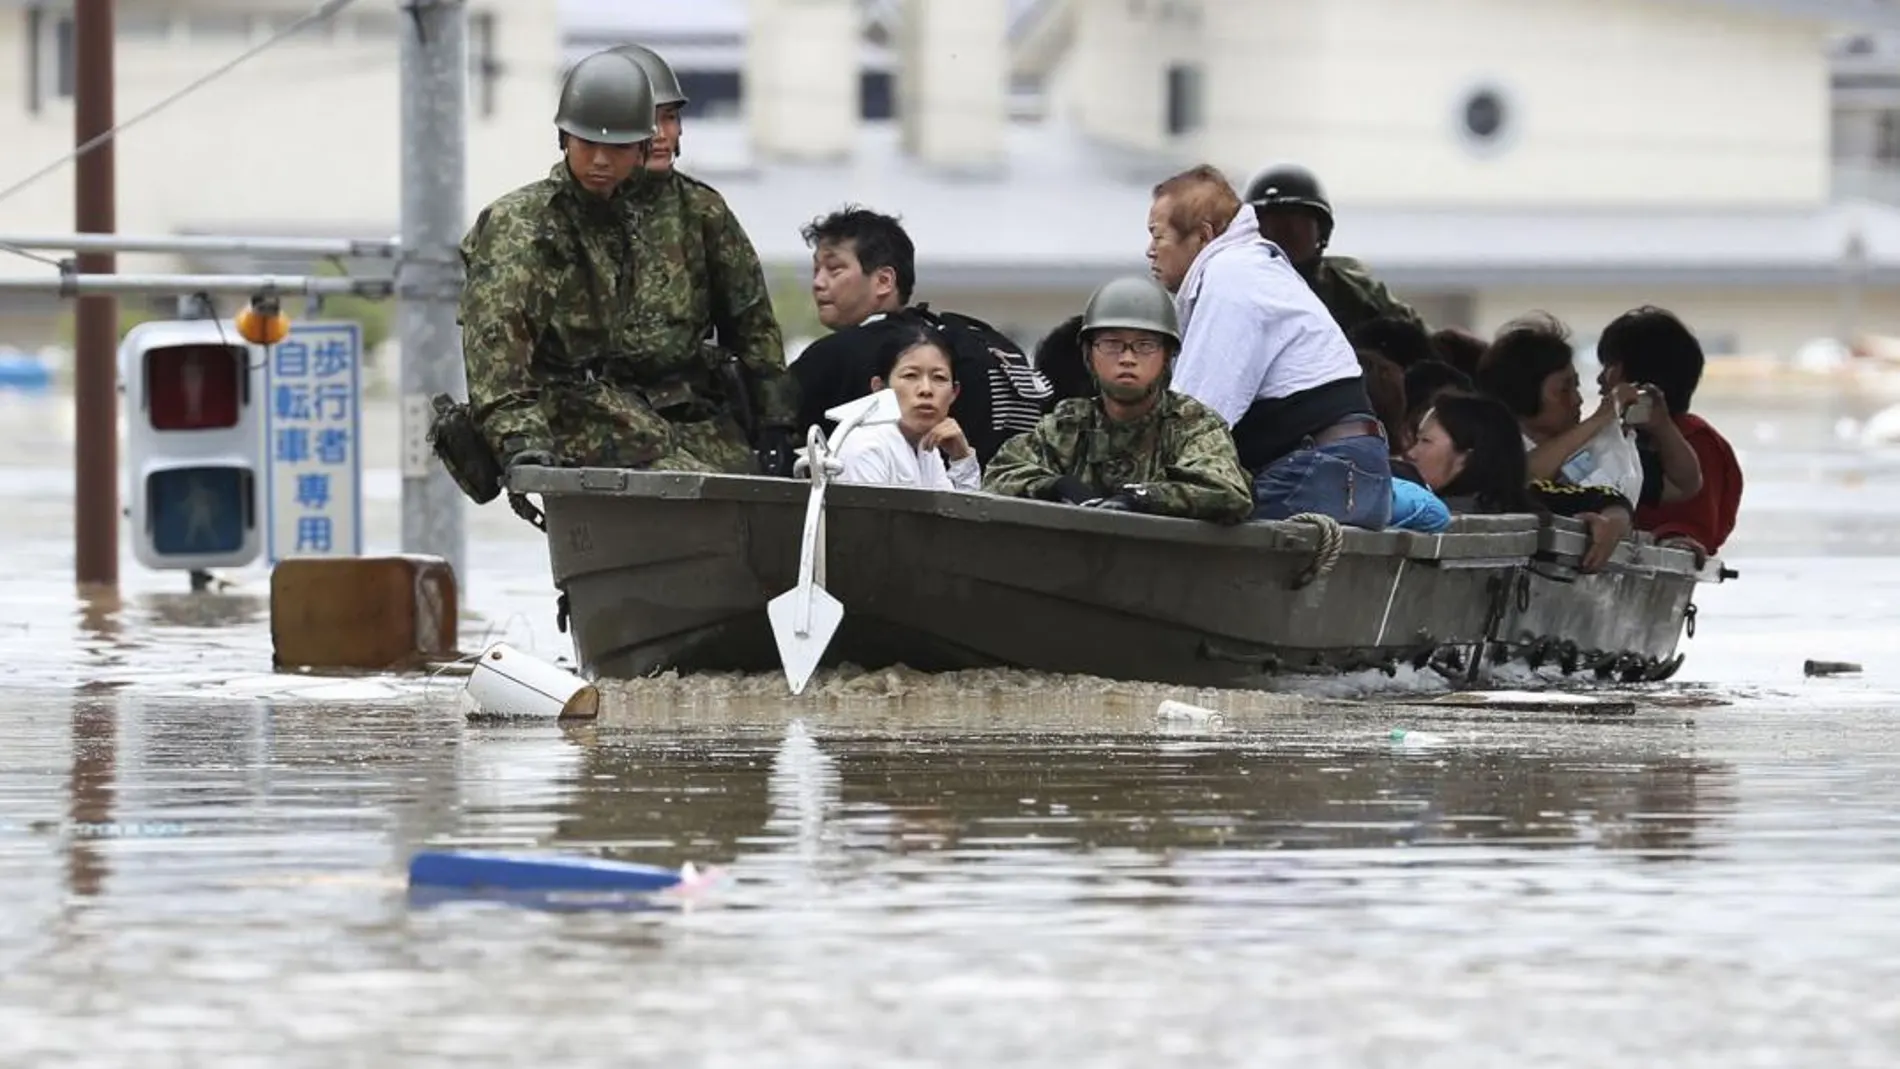 Los servicios de rescate evacuan a los afectados. Foto: Ap